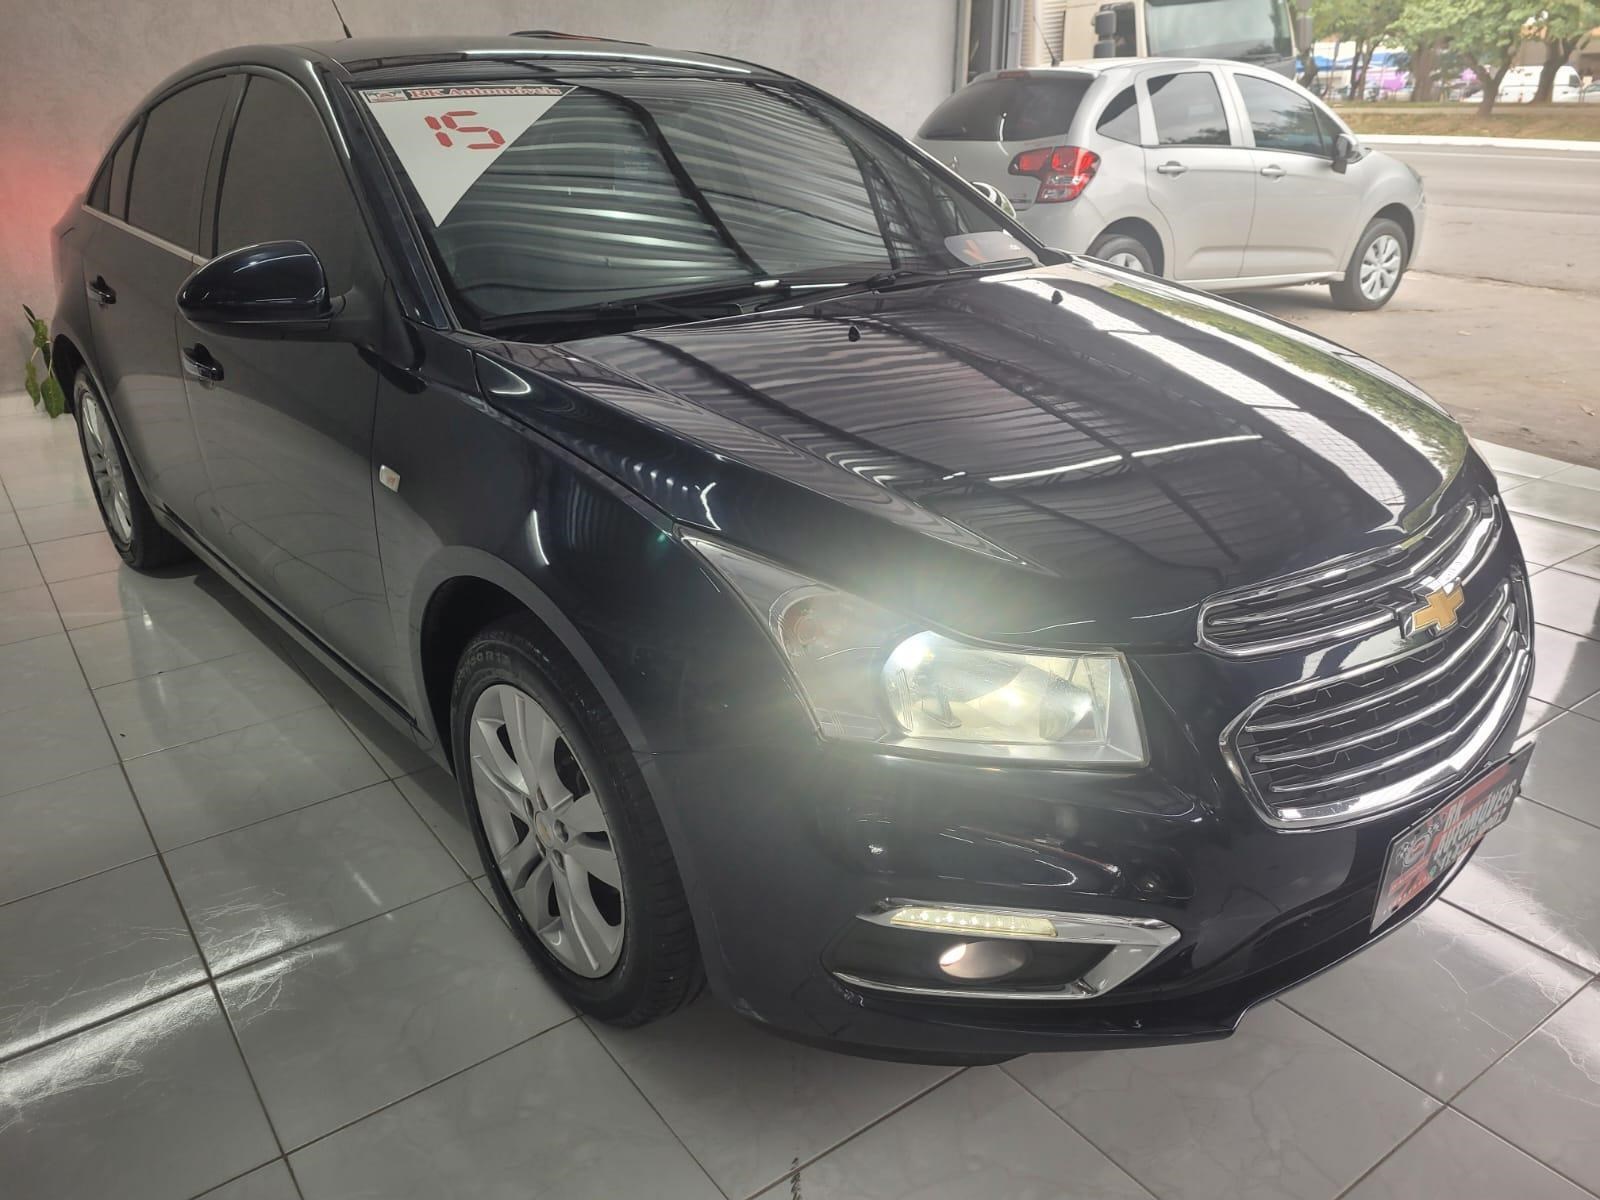 //www.autoline.com.br/carro/chevrolet/cruze-18-sedan-ltz-16v-flex-4p-automatico/2015/sao-paulo-sp/17699409